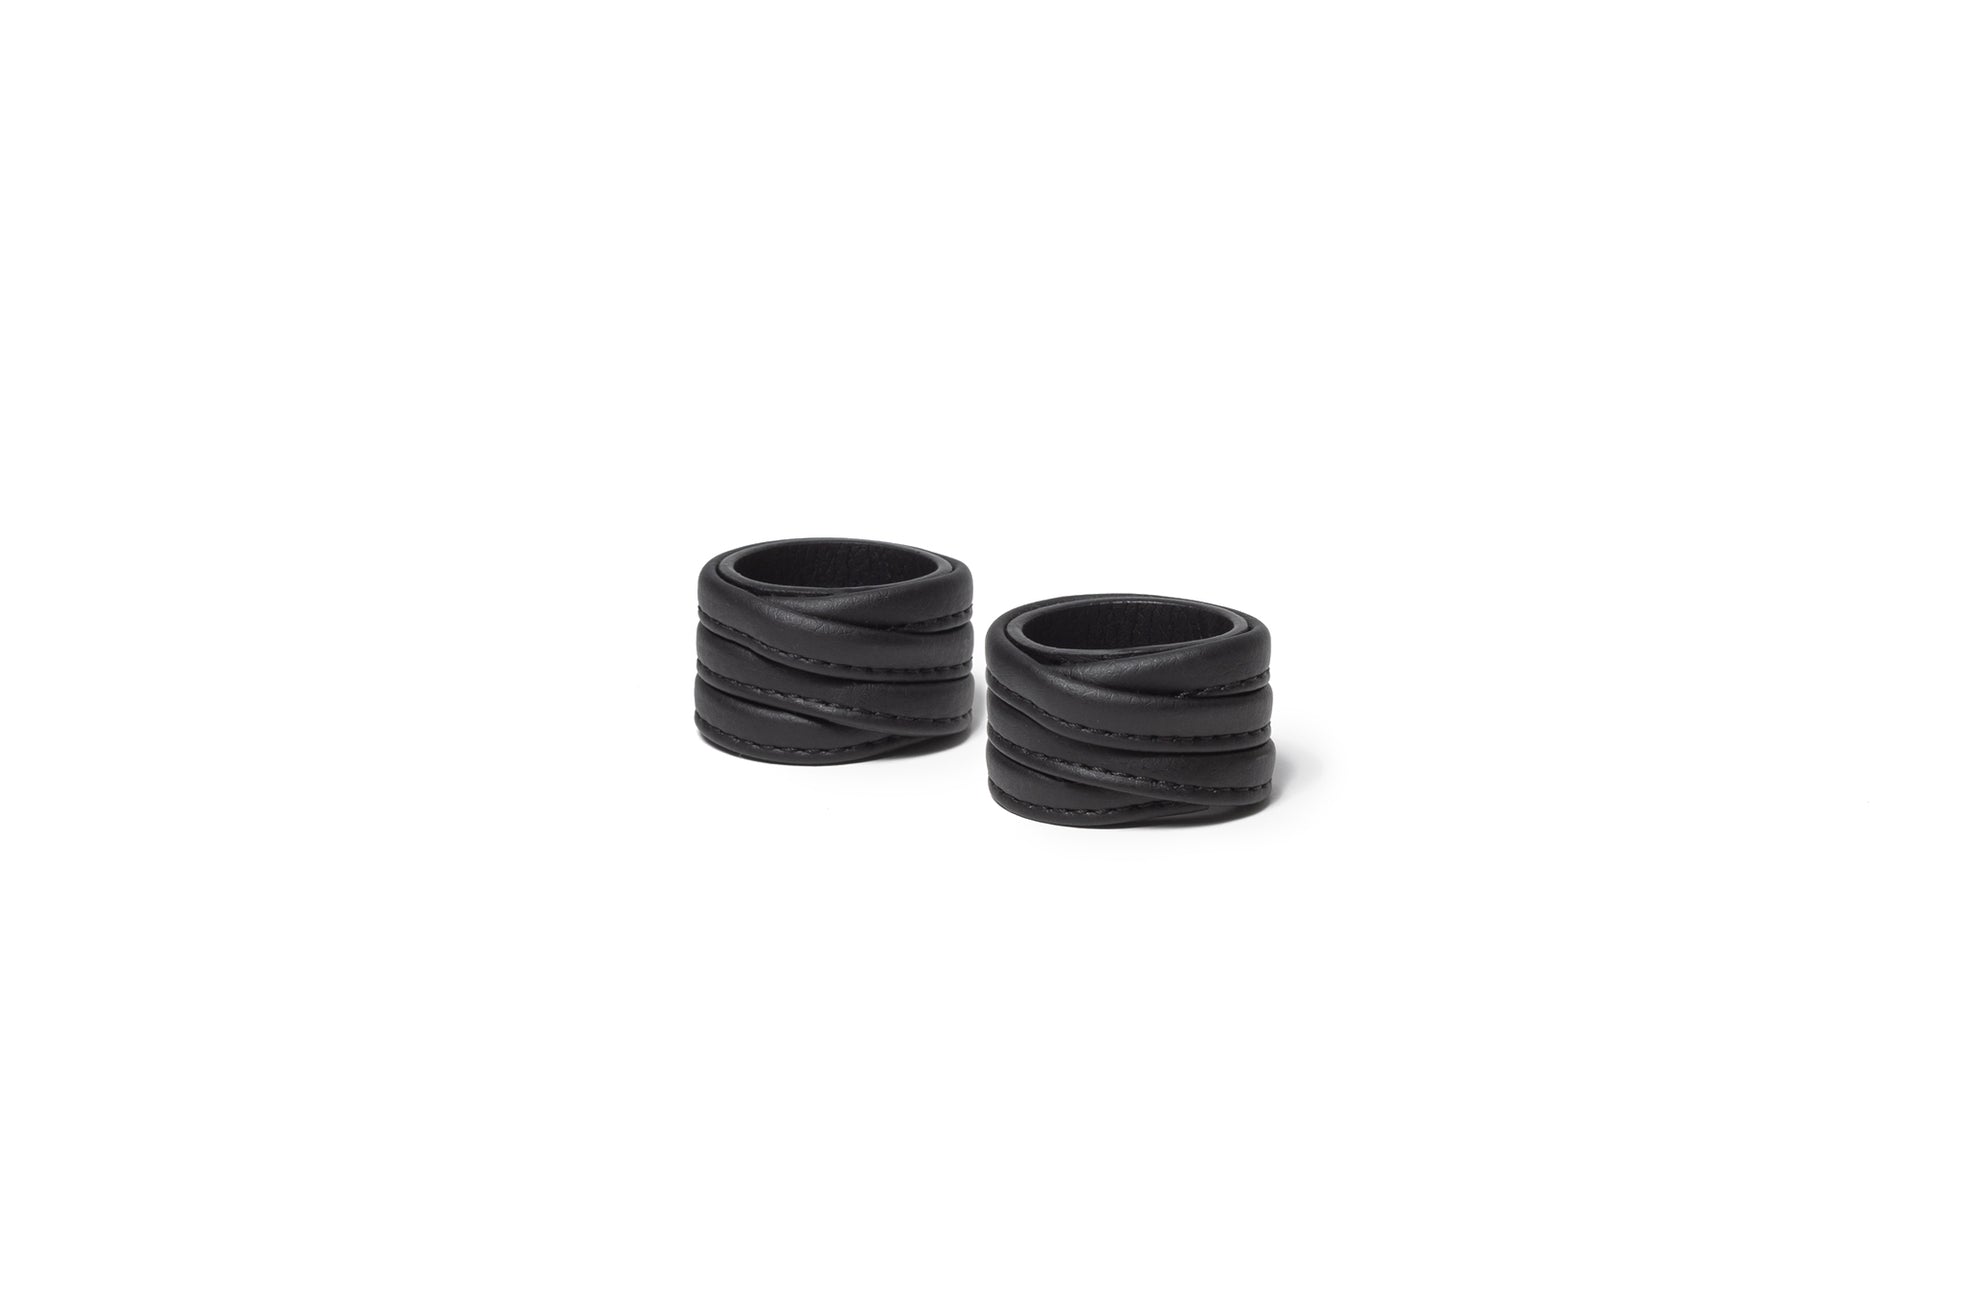 The Napkin Rings - Sample Sale in Technik-Leather in Black image 1